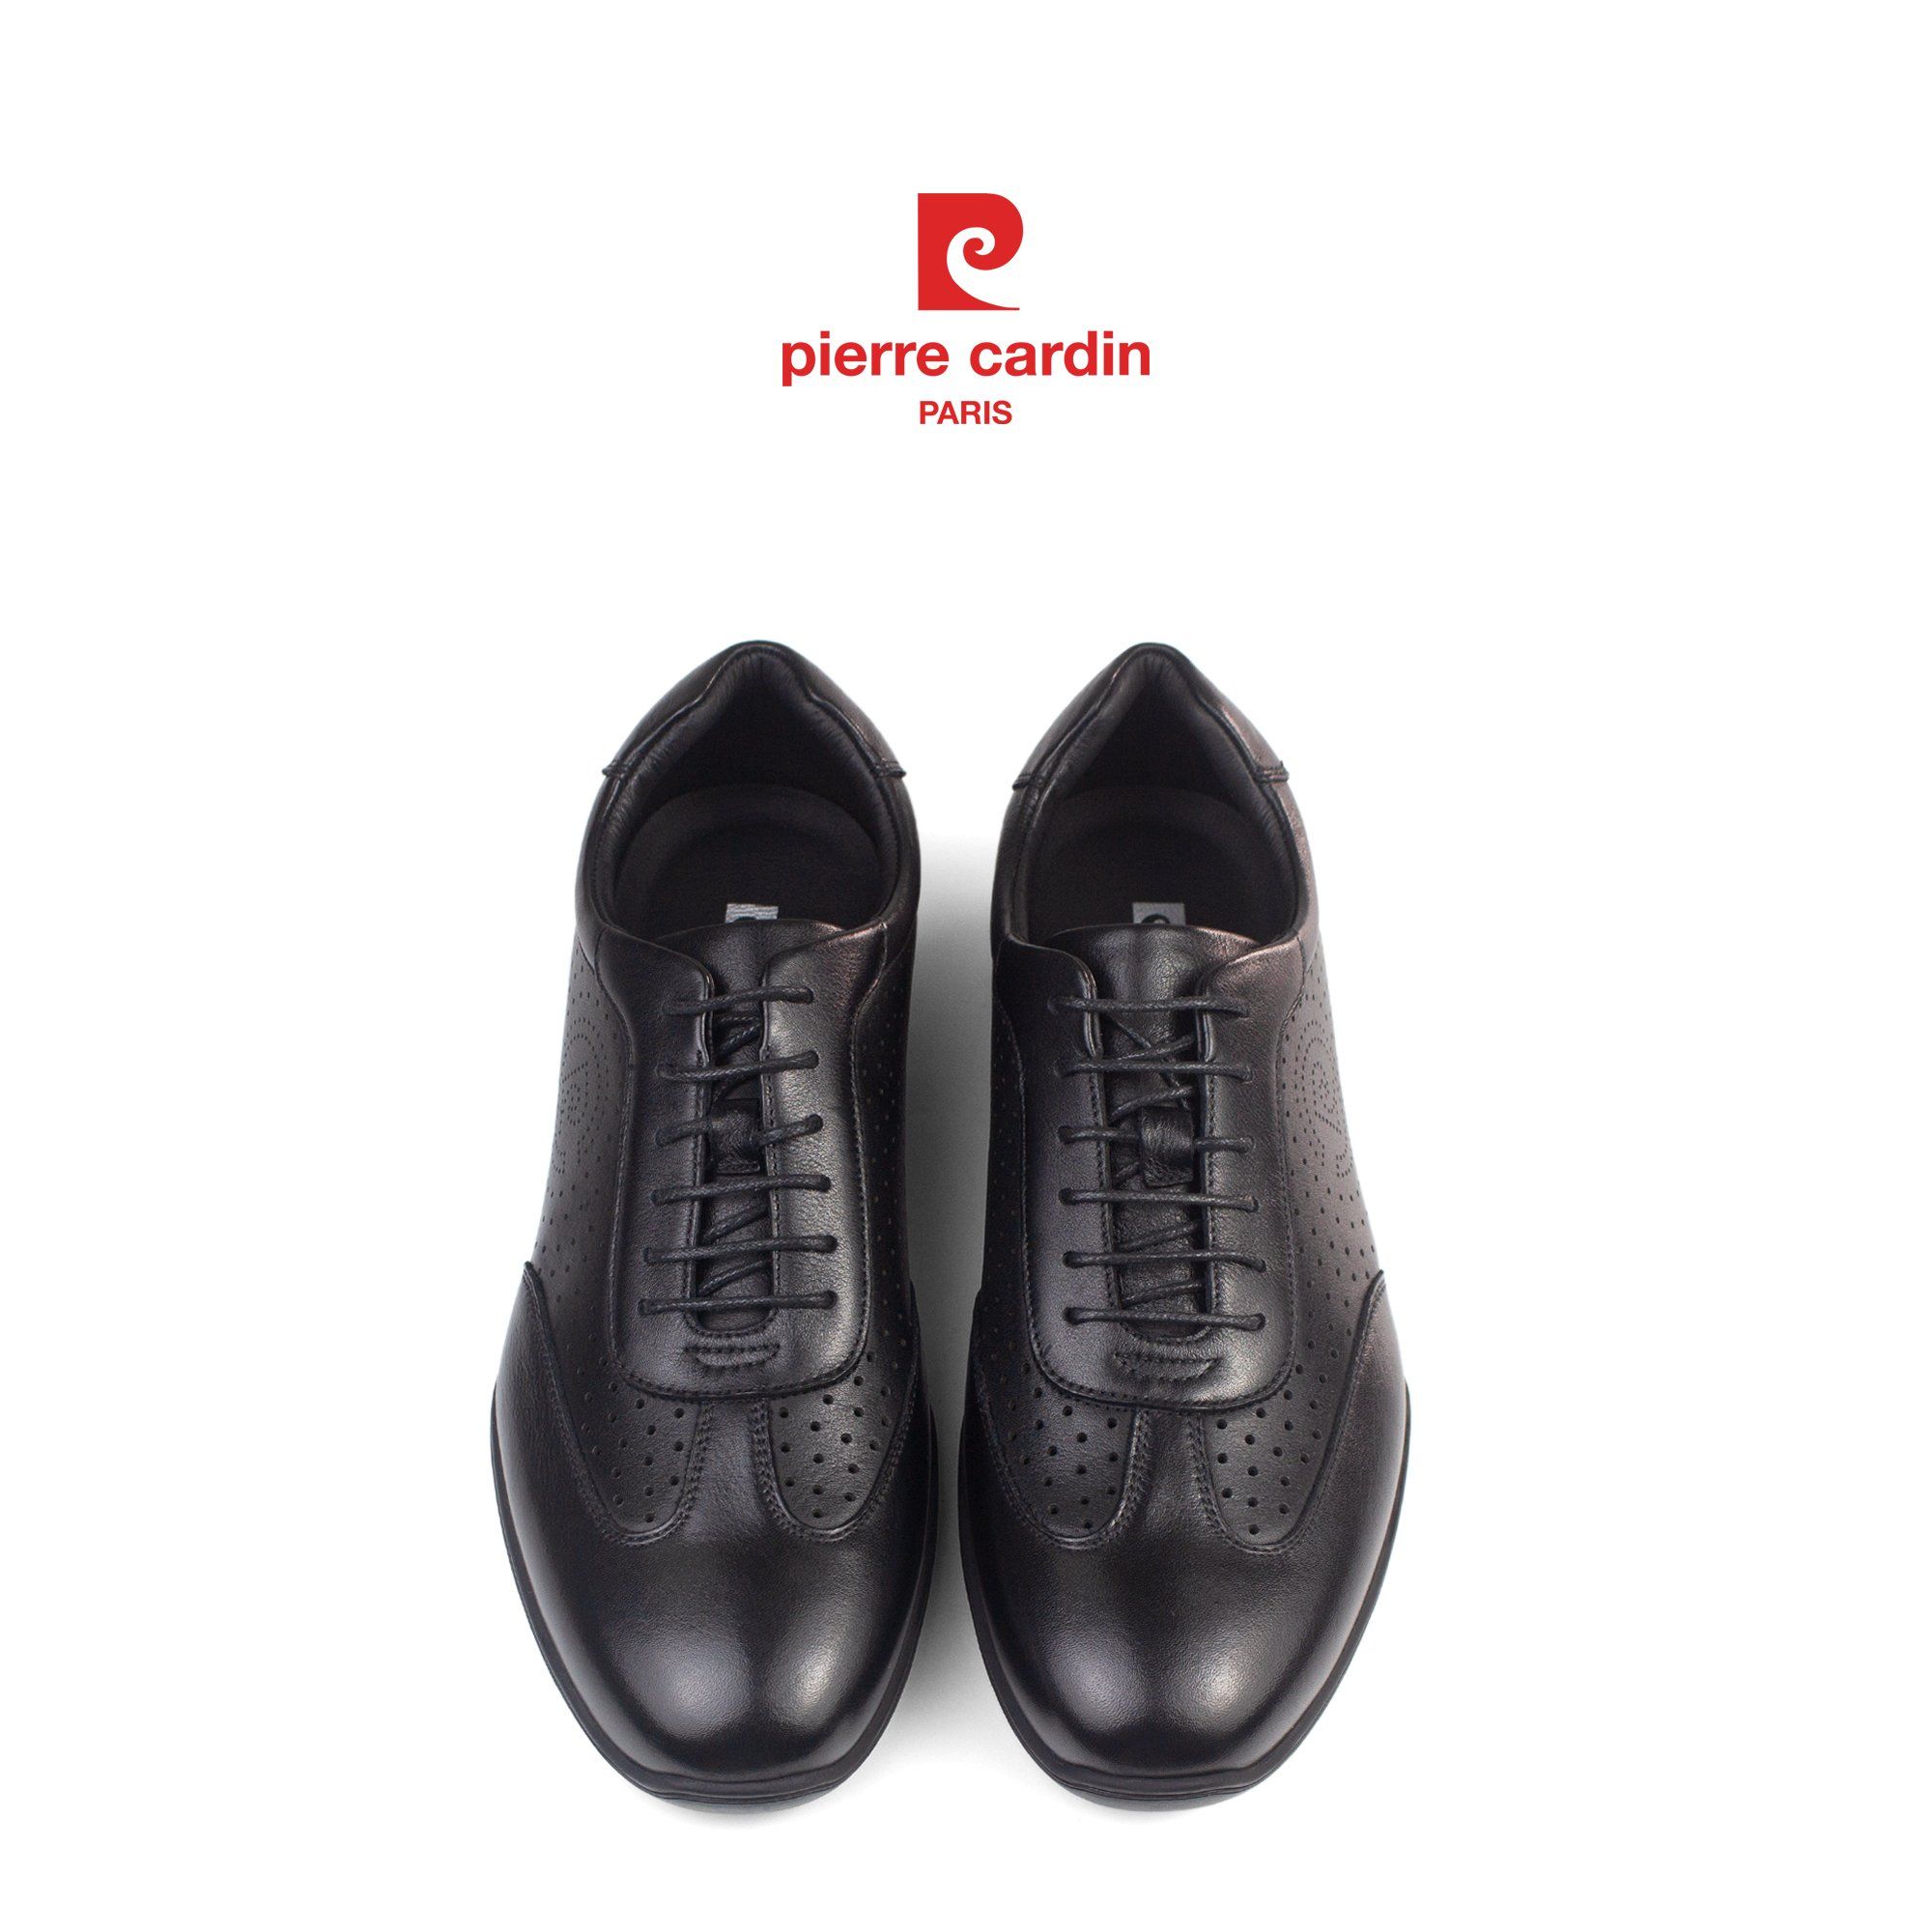 Hình 1 - Mẫu giày PCMFWLH 786 của Pierre Cardin là sự kết hợp tinh tế giữa phong cách cổ điển và hiện đại